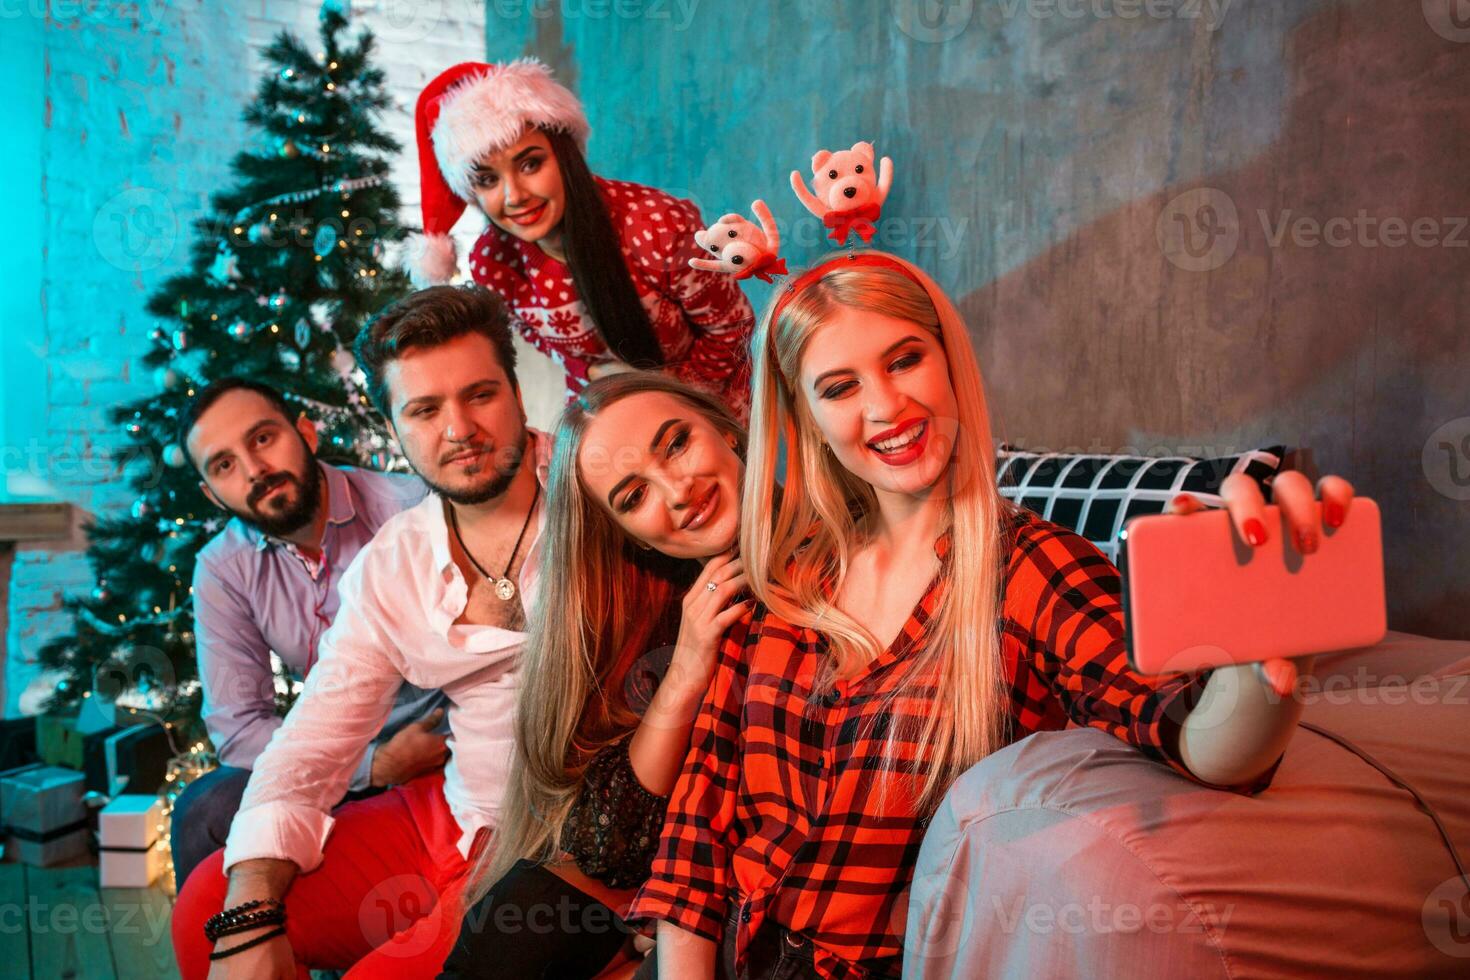 copains fabrication selfie tandis que célébrer Noël ou Nouveau année veille à Accueil photo